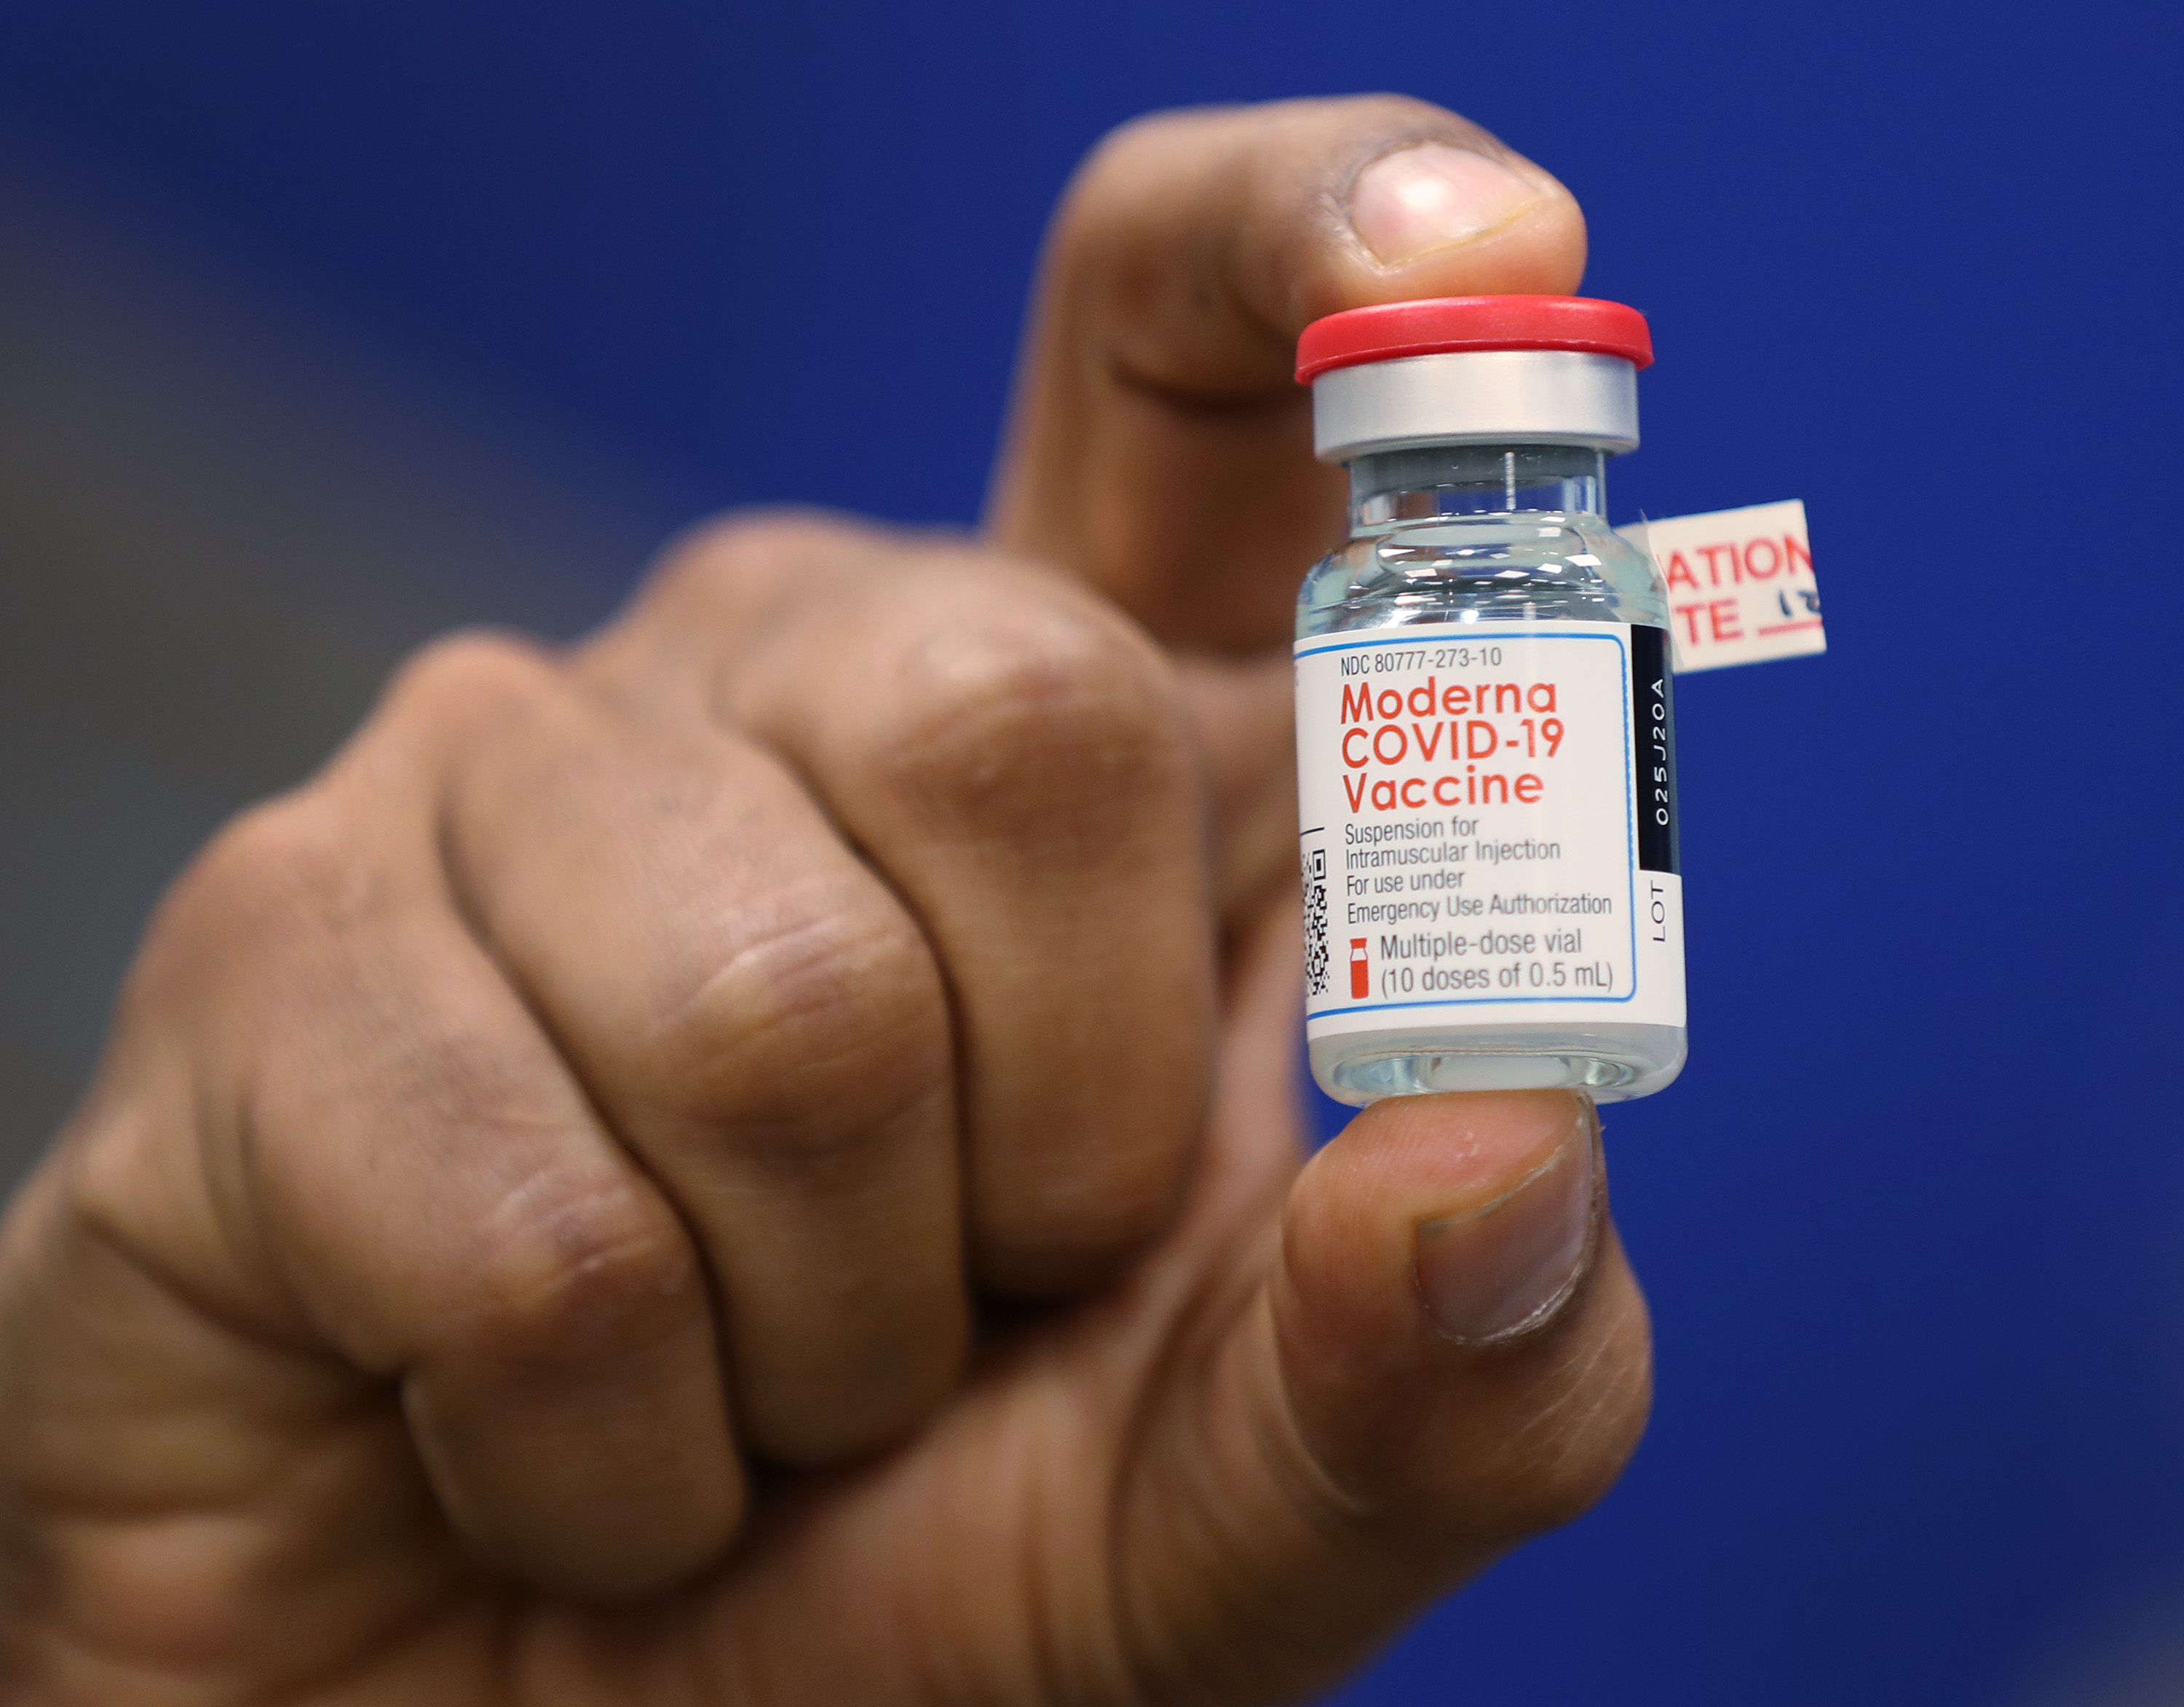 Dave Lacknauth, Pharm. D., Director de Servicios de Farmacia, Broward Health Medical Center muestra un frasco de la vacuna Moderna COVID-19 durante una conferencia de prensa el 23 de diciembre de 2020 en Fort Lauderdale, Florida.